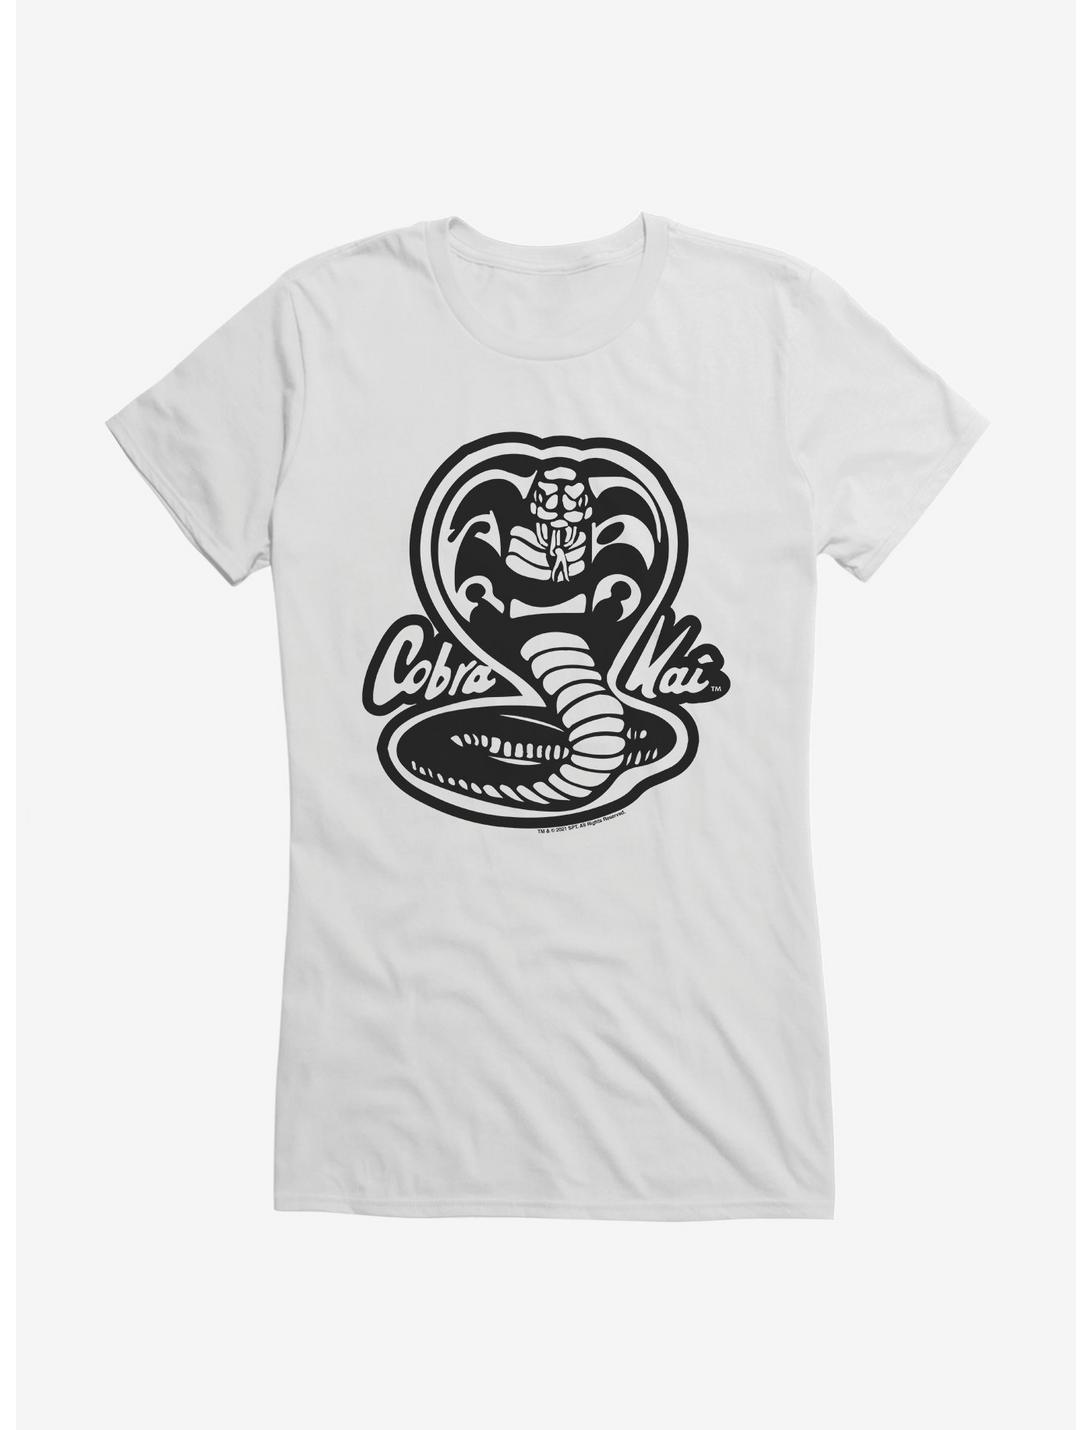 Cobra Kai Black And White Logo Girls T-Shirt, WHITE, hi-res